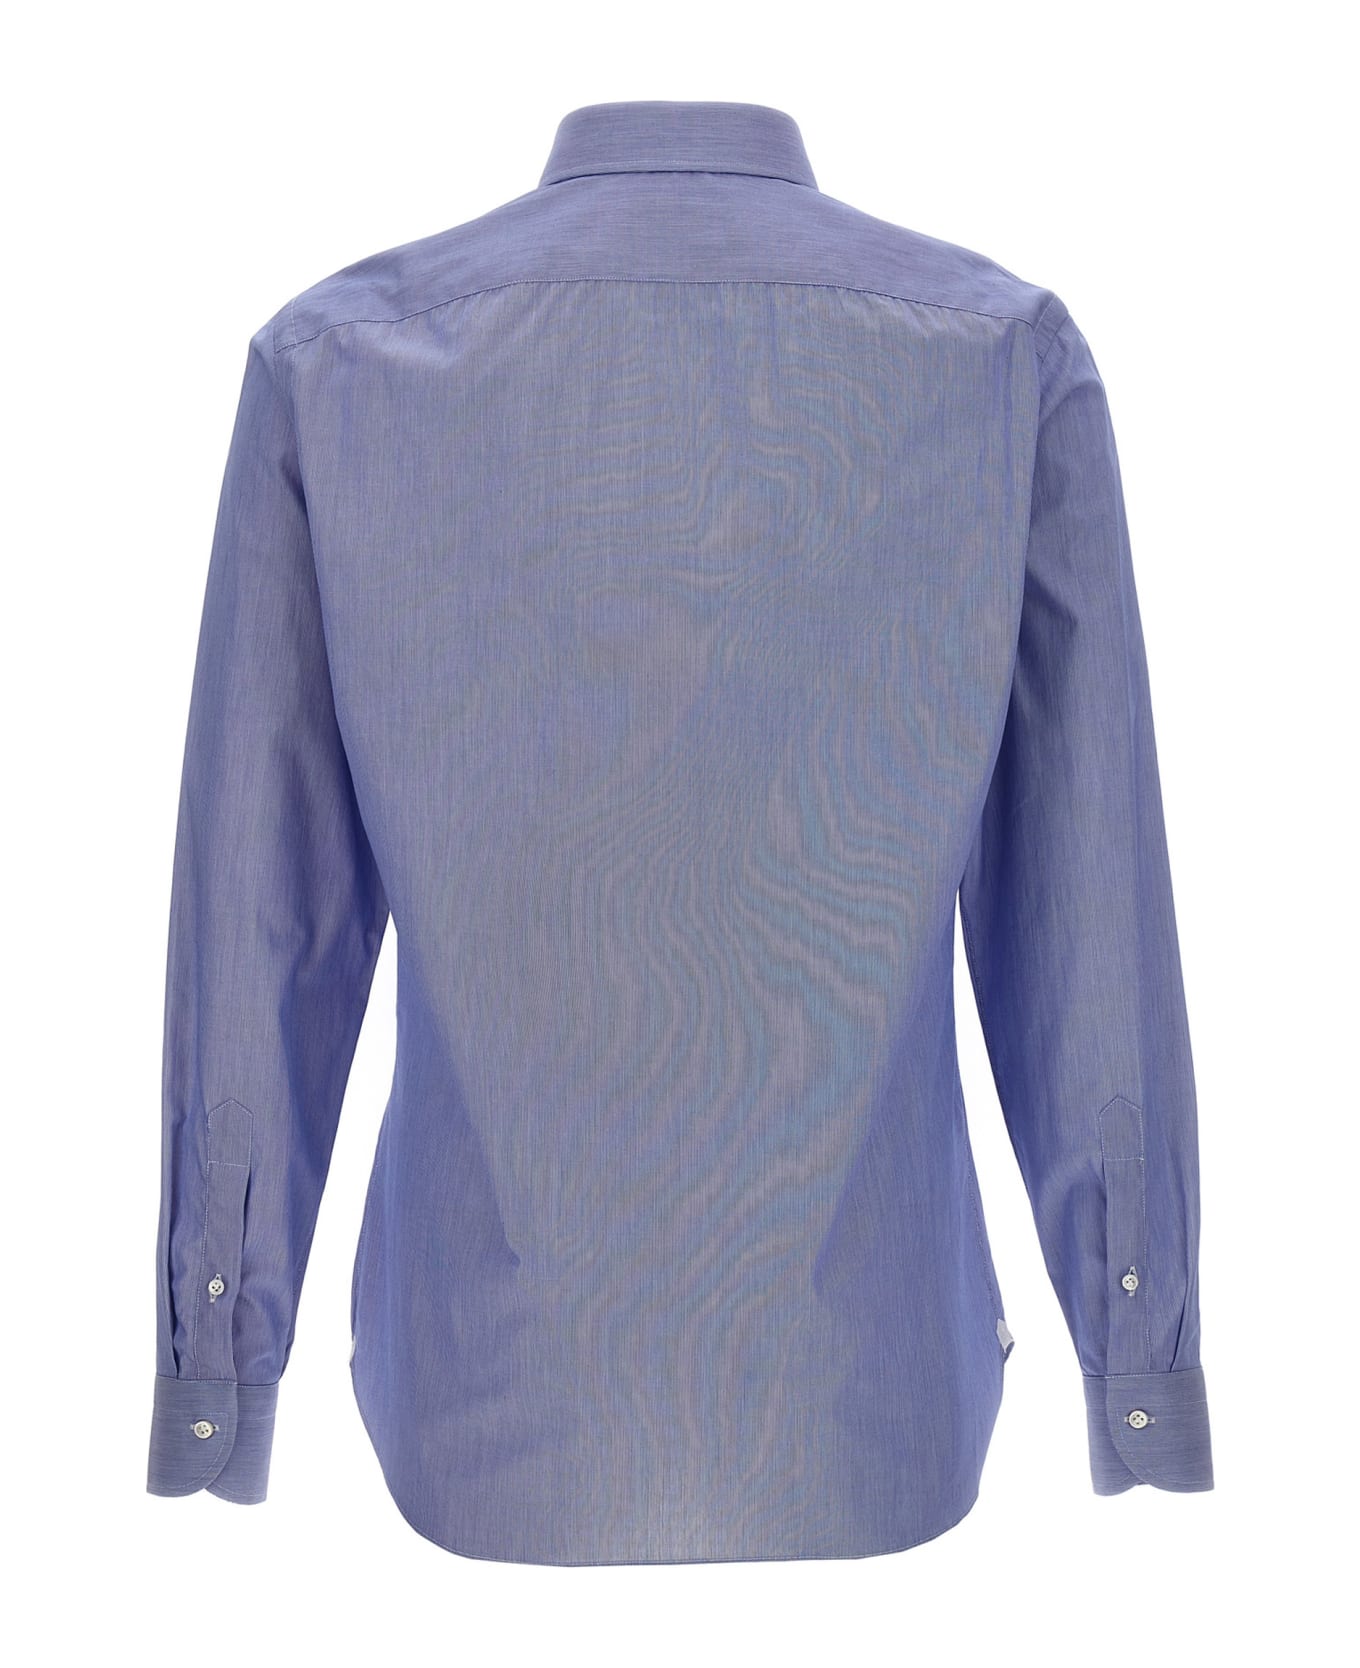 Borriello Napoli 'falso Unito' Cotton Shirt - Light Blue シャツ